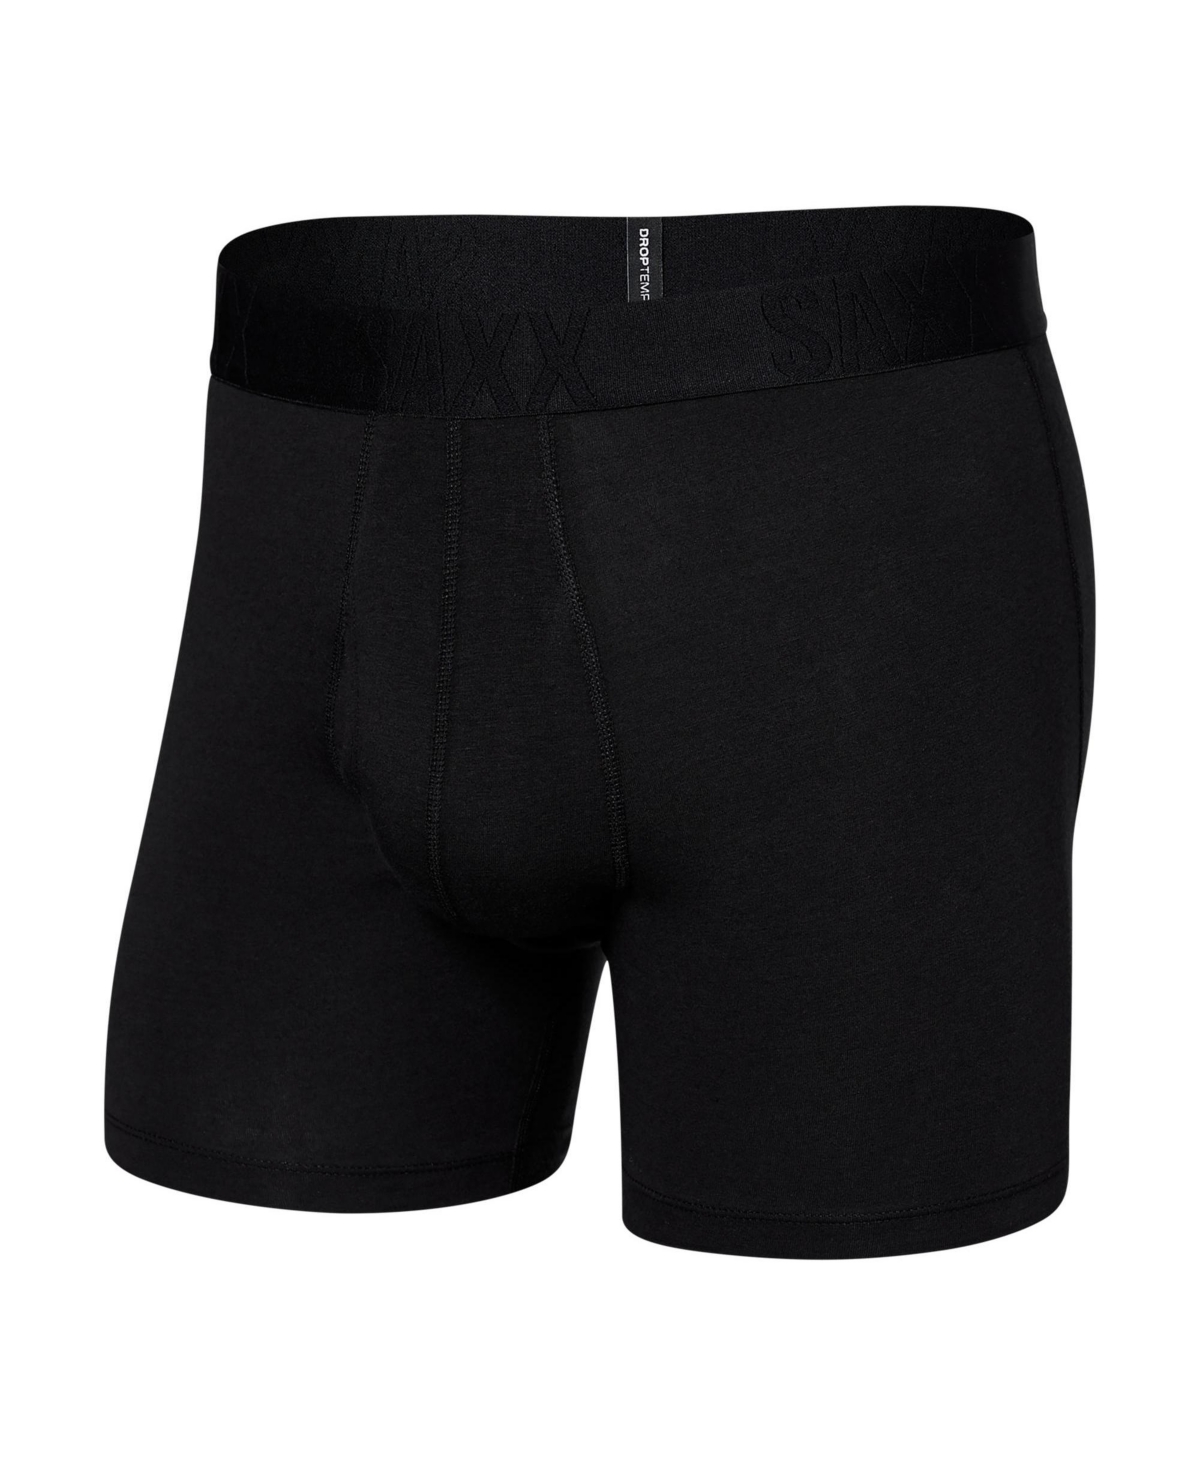 Saxx Men's Droptemp Cooling Cotton Slim Fit Boxer Briefs In Black